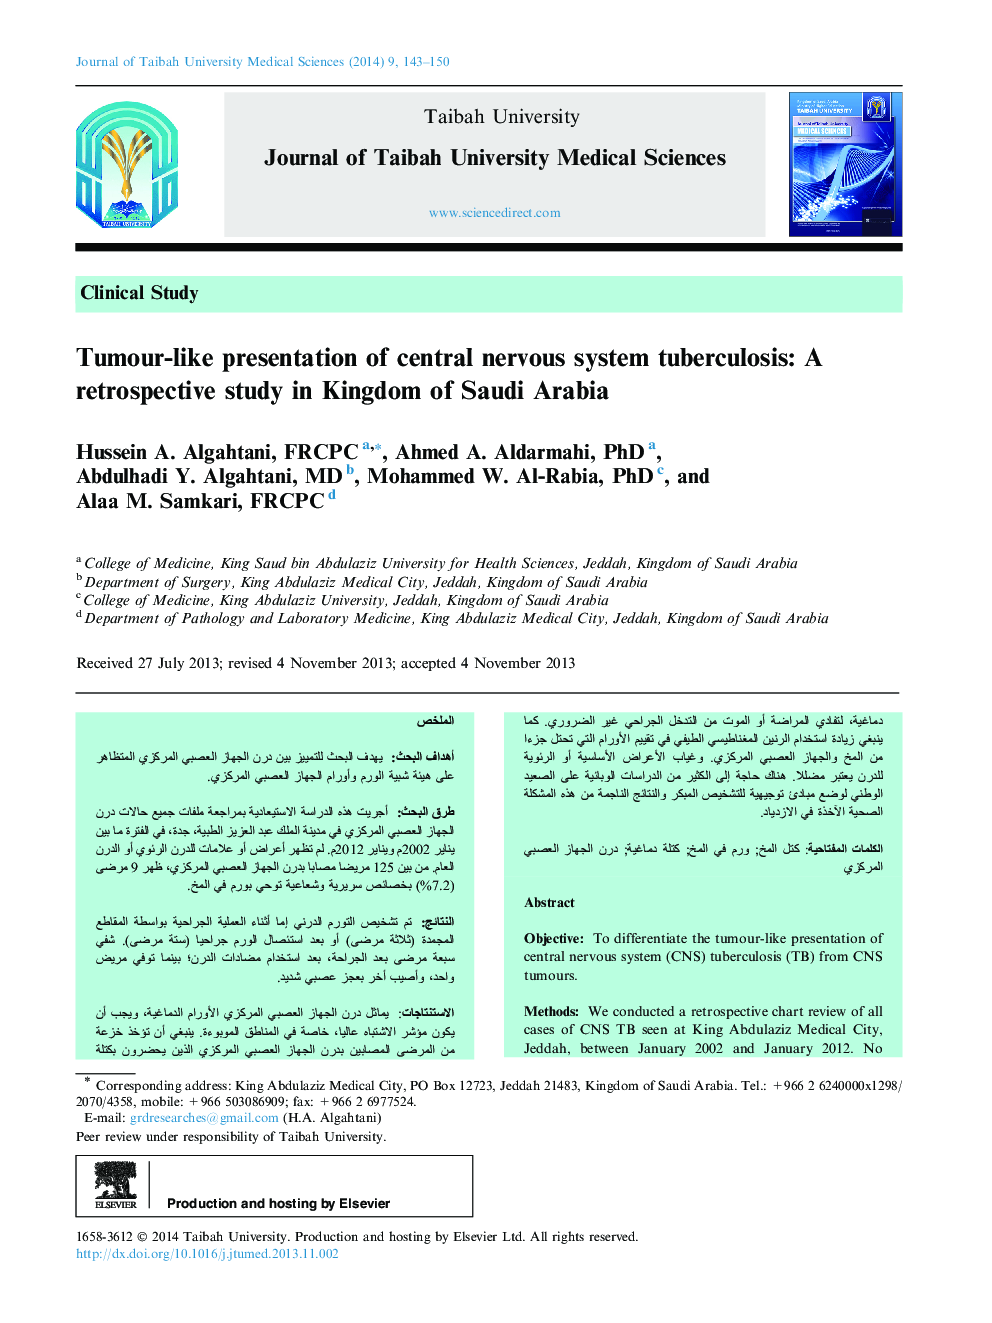 ارائه تومور سلول های عصبی مرکزی: یک مطالعه گذشته نگر در پادشاهی عربستان سعودی 